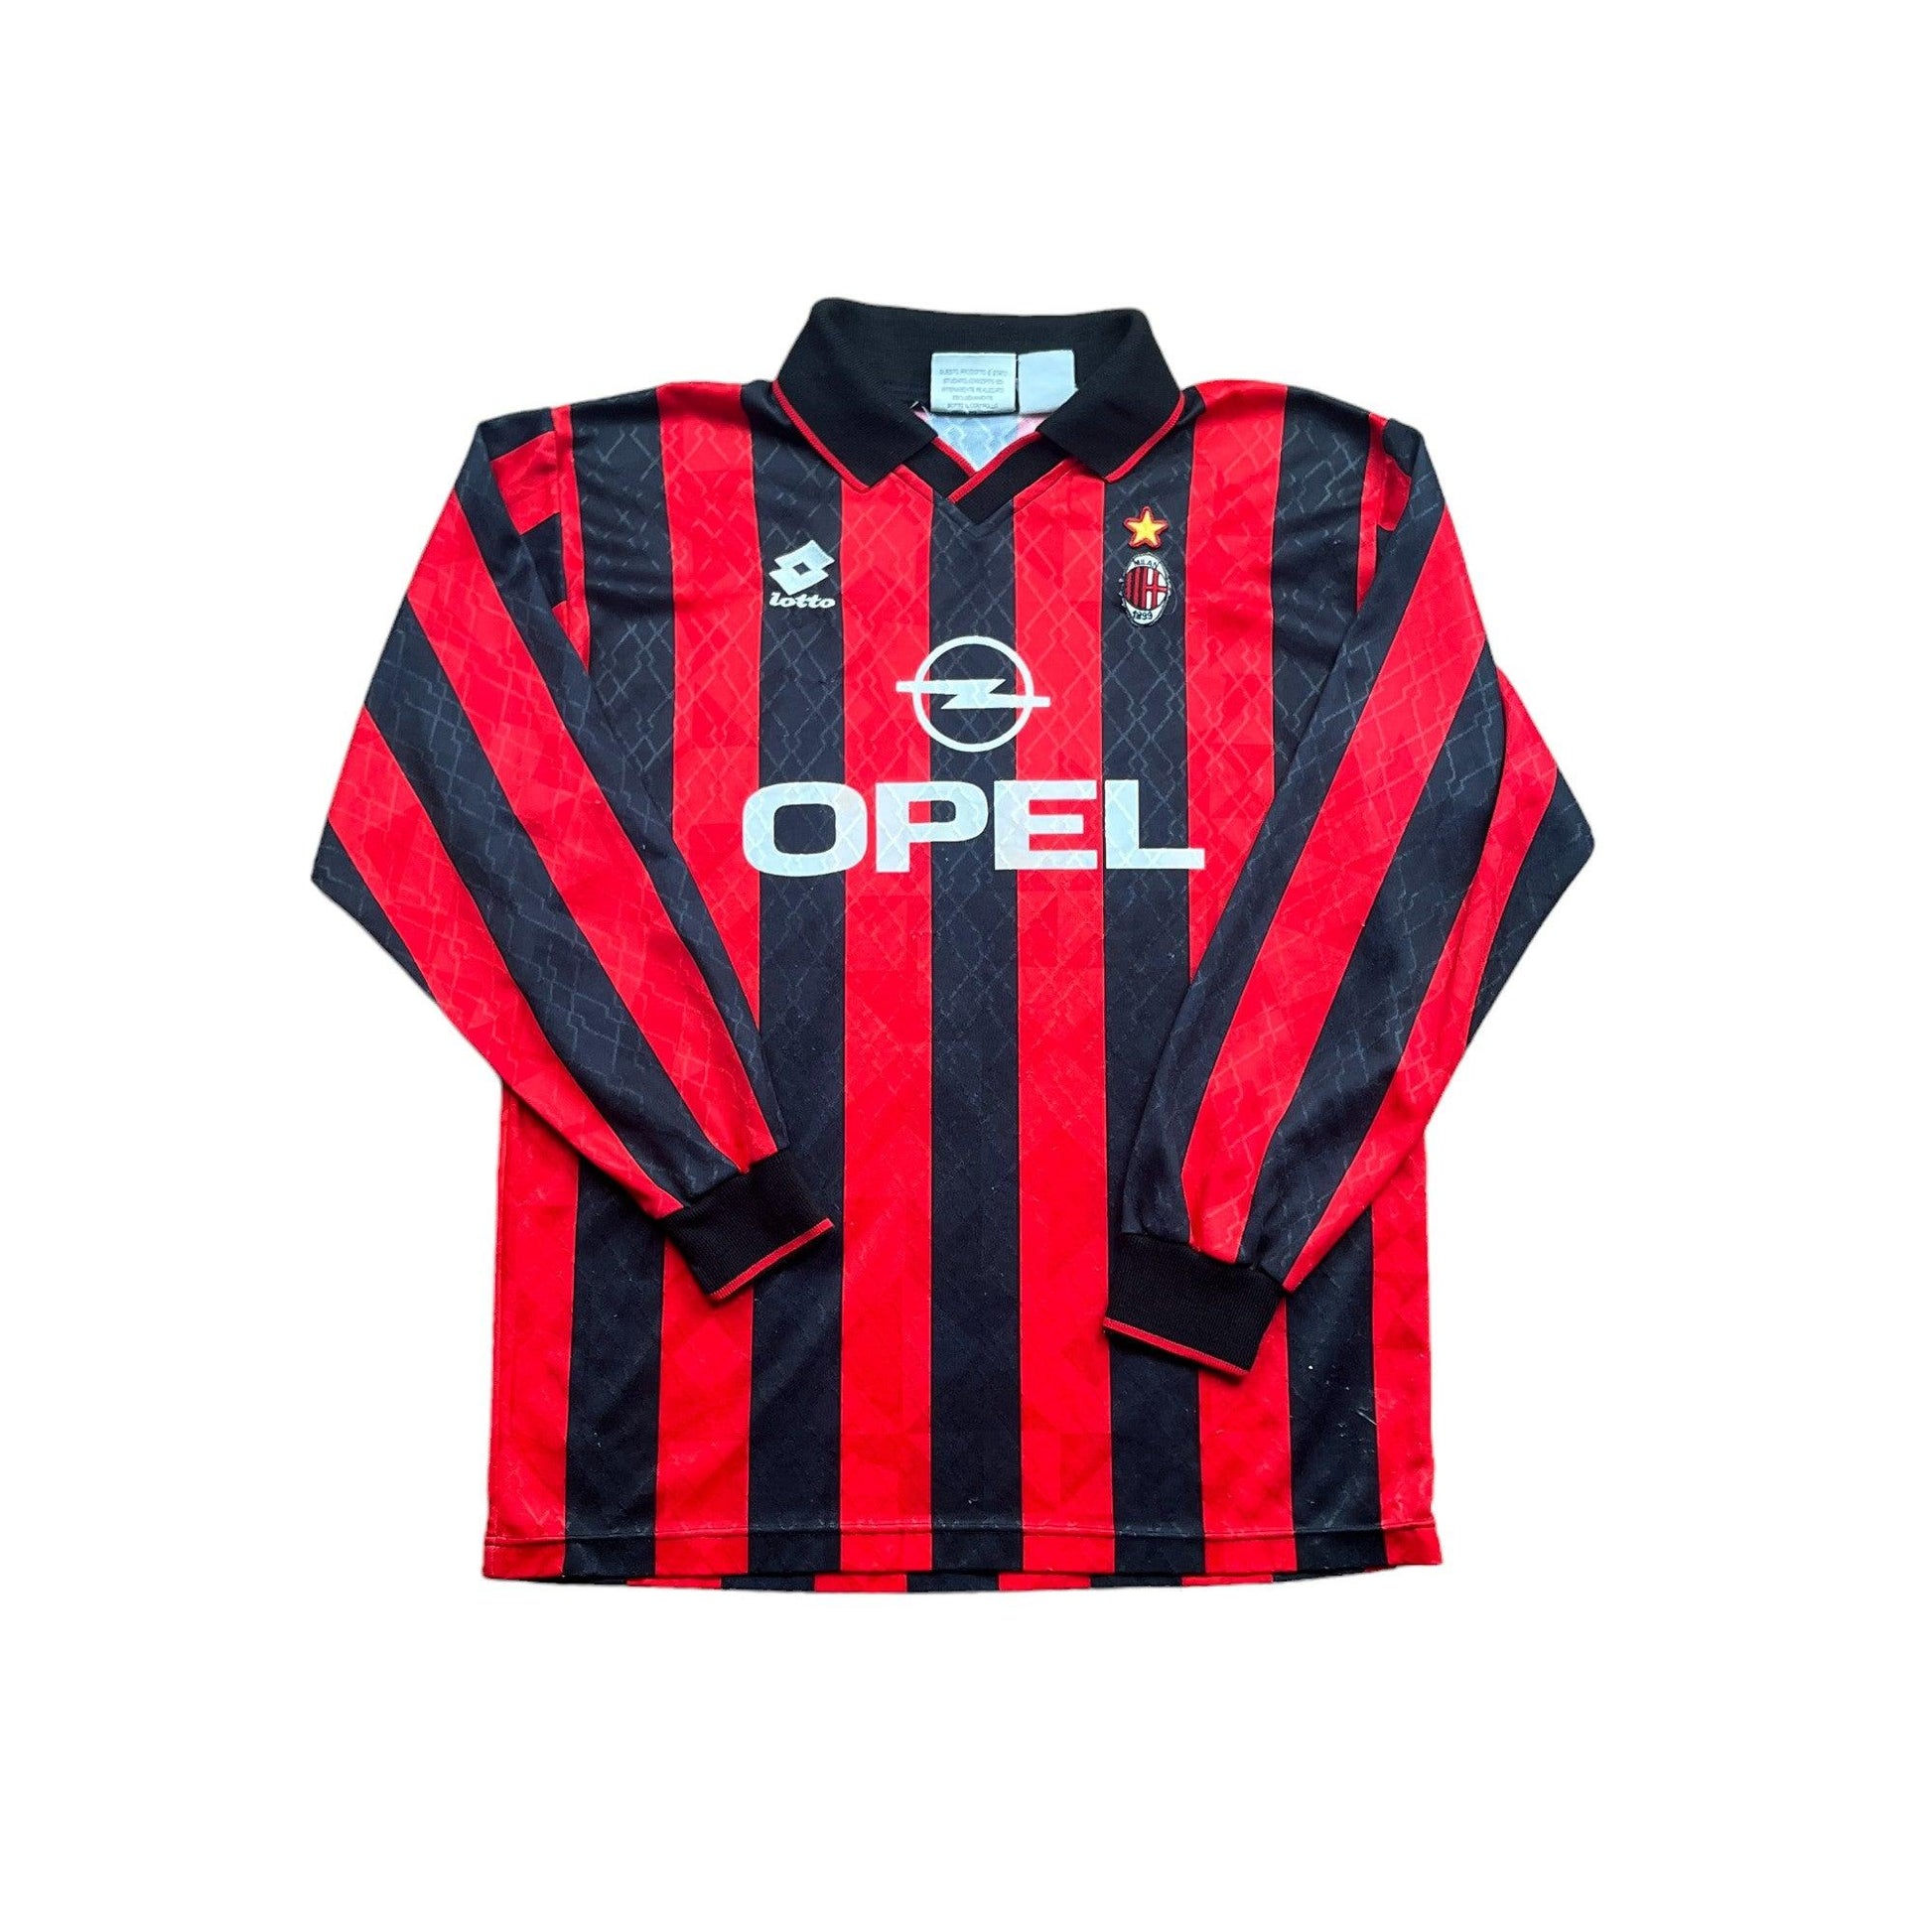 1994-95 Red + Black AC Milan Longsleeve Tee - Large - The Streetwear Studio